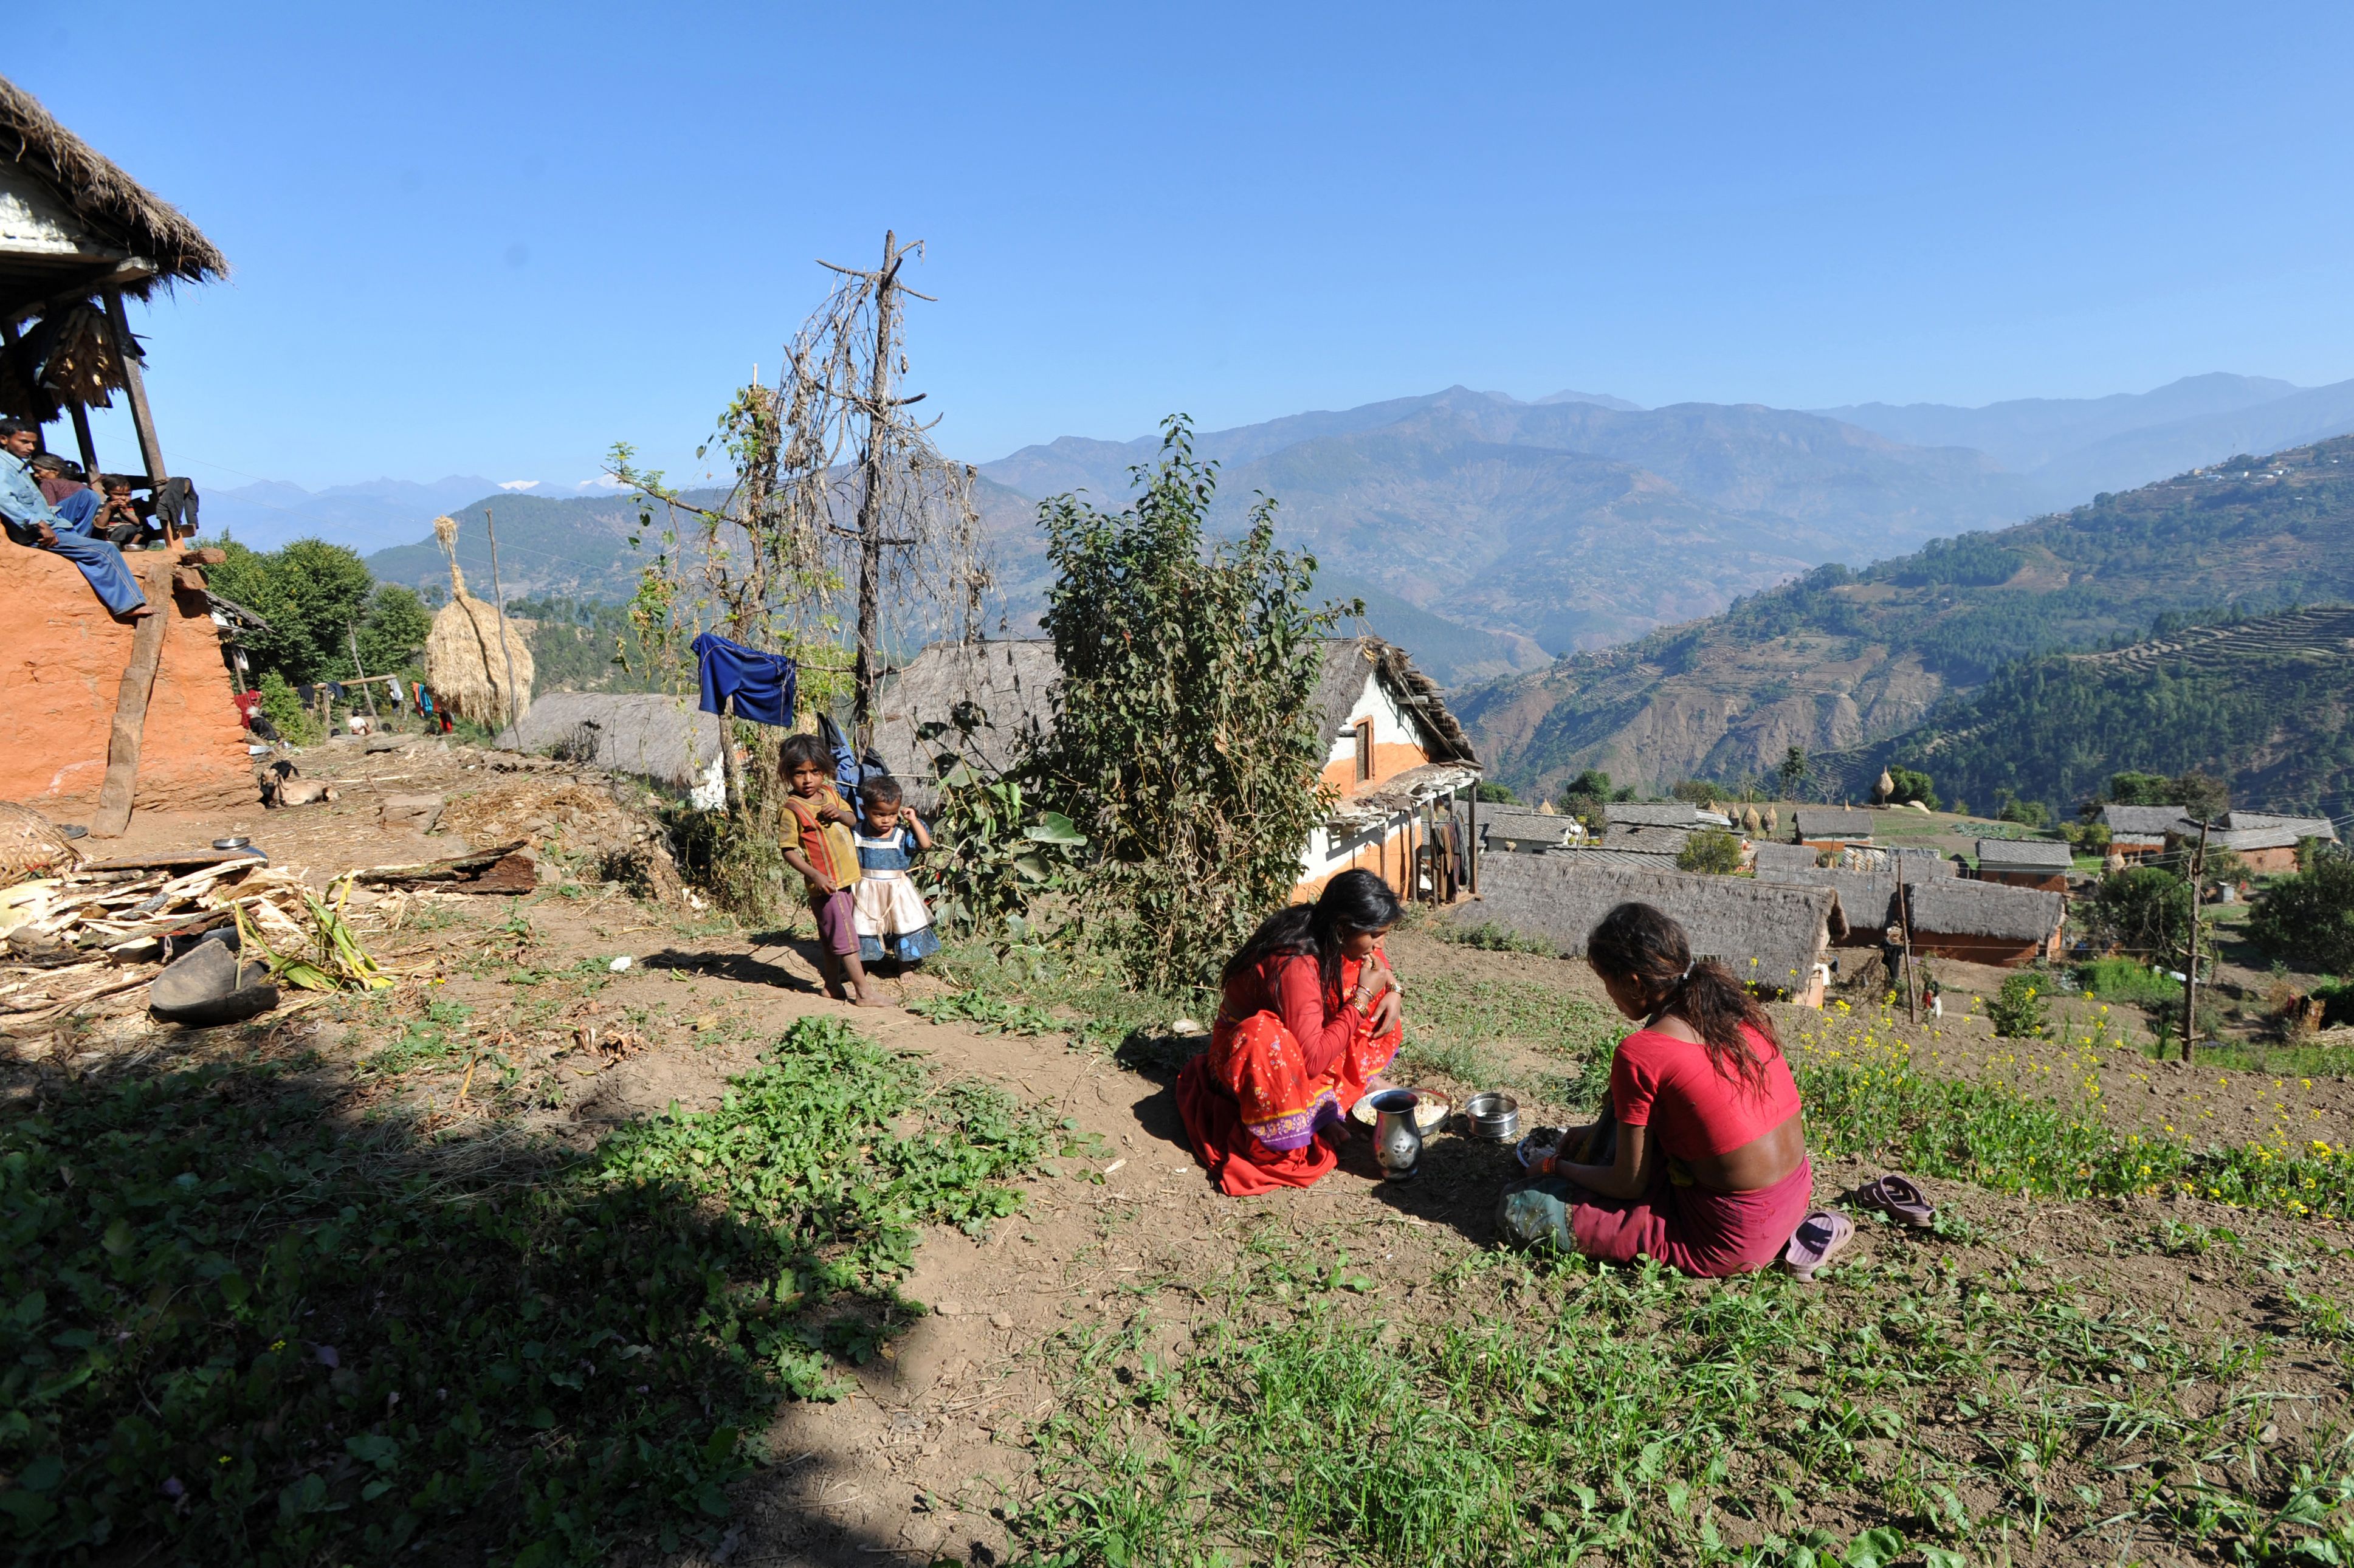 3873px x 2580px - Nepal: 15-year-old girl dies in 'menstruation hut' | CNN